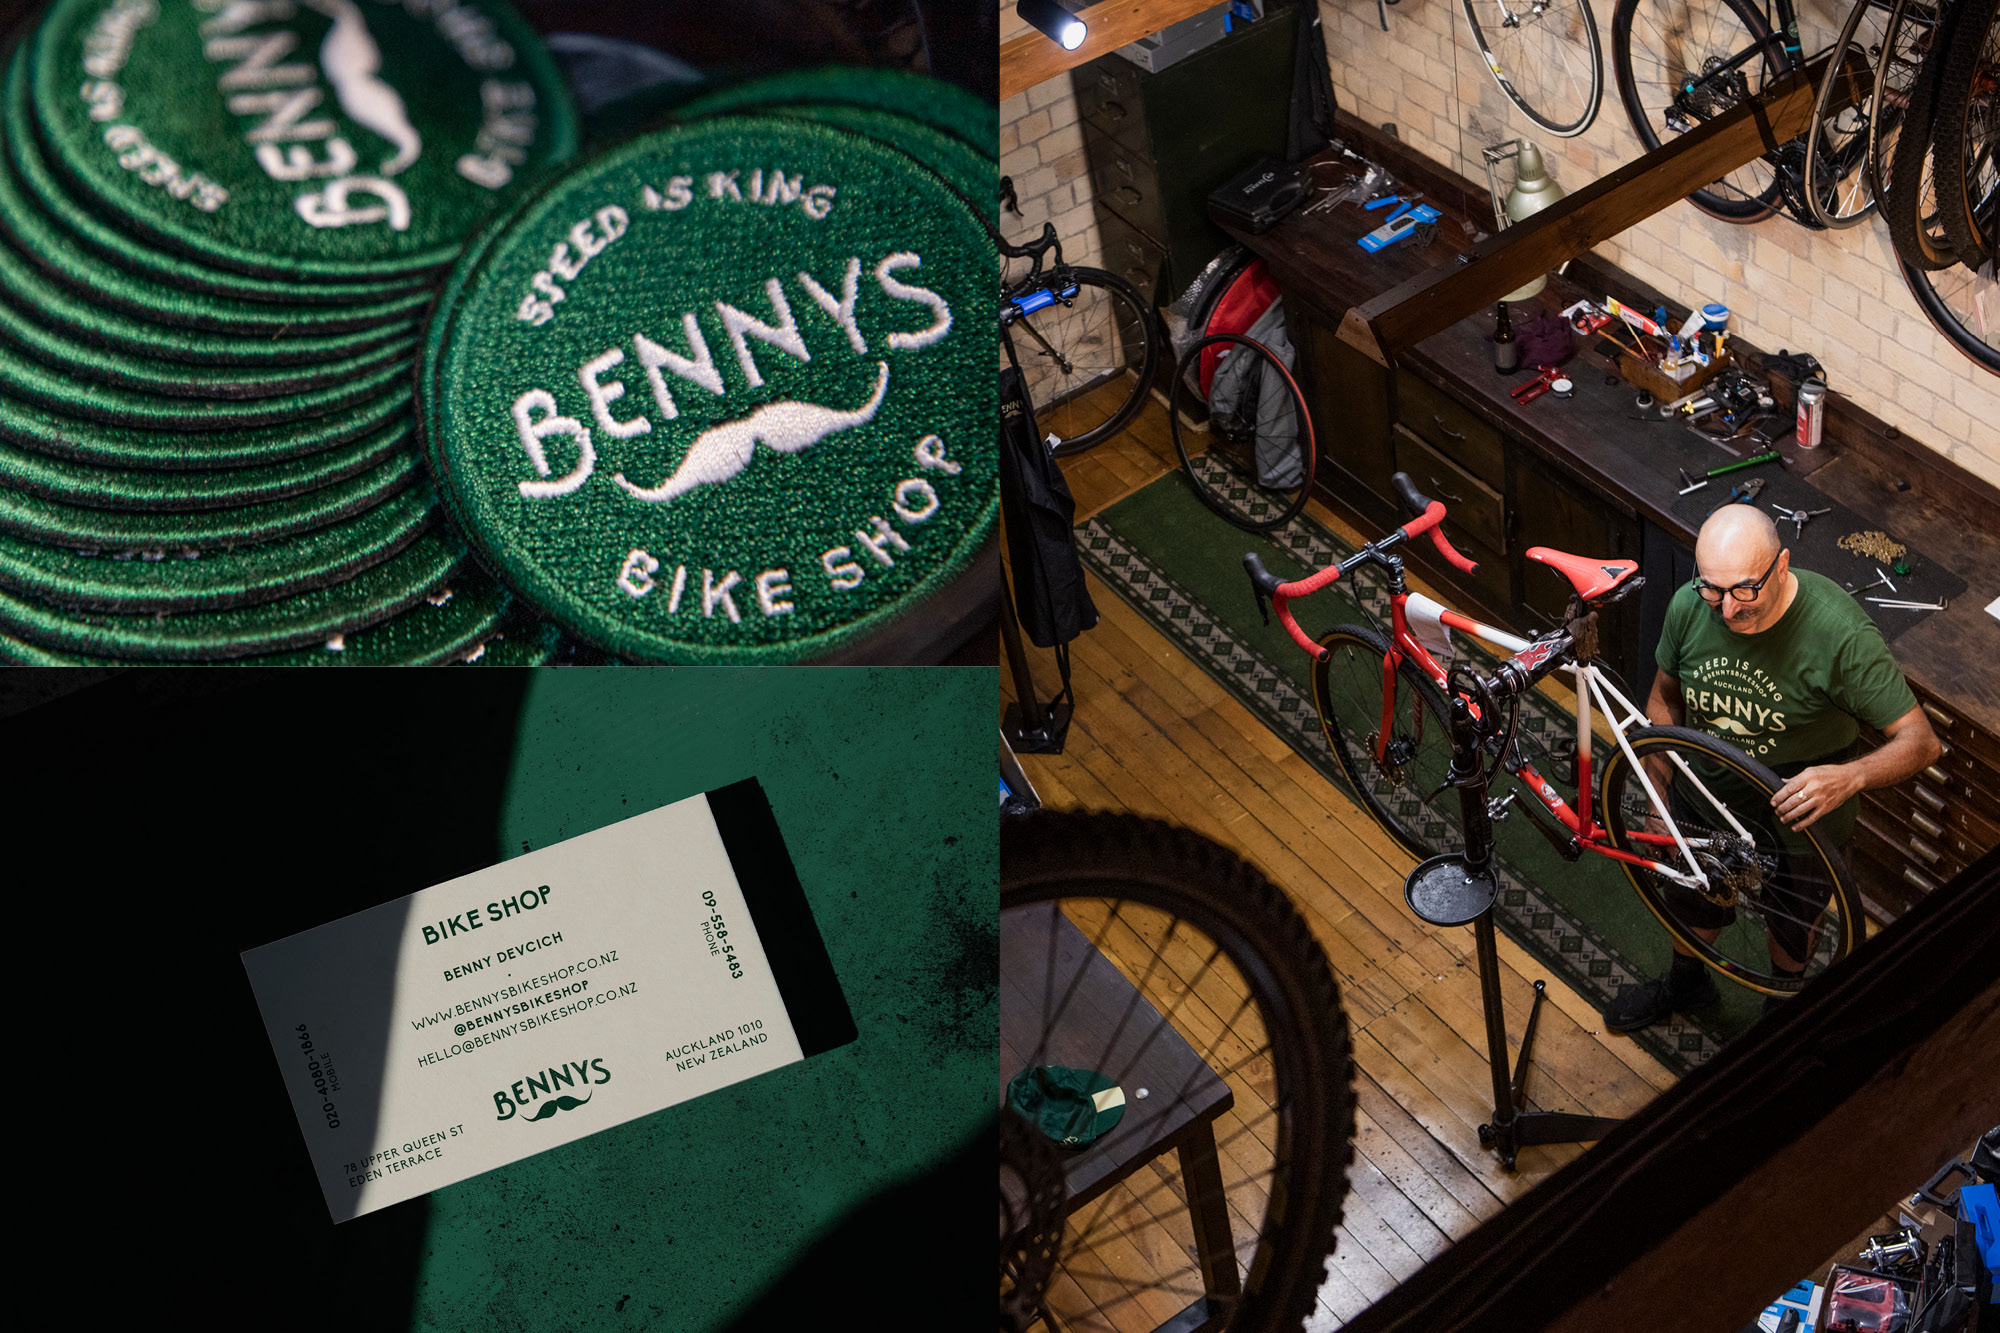 onfire design bennys bike shop branding project auckland nz8